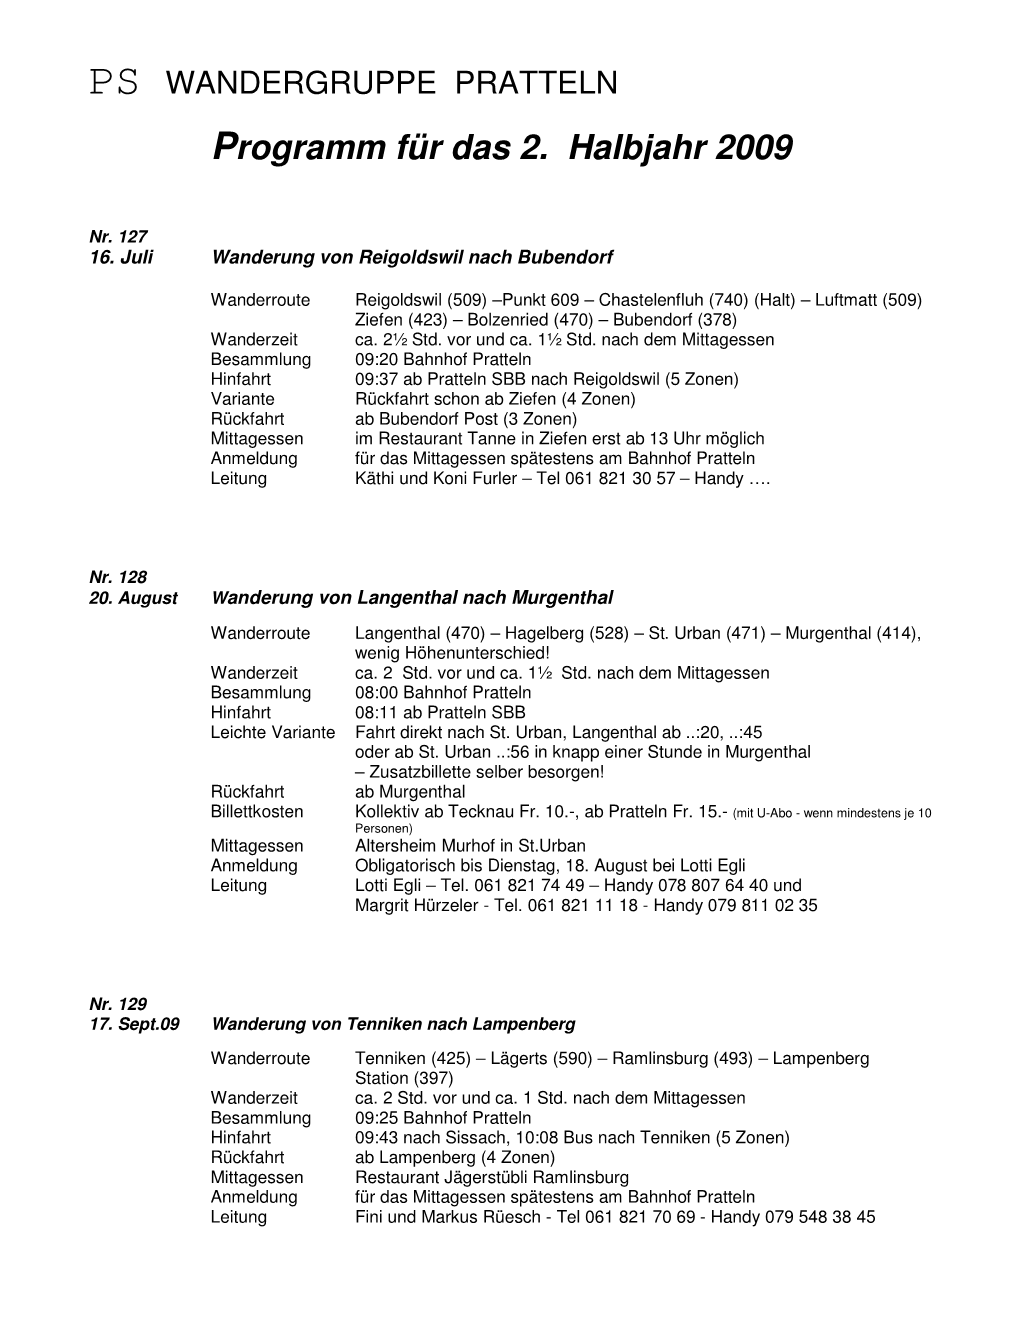 Programm Für Das 2. Halbjahr 2009